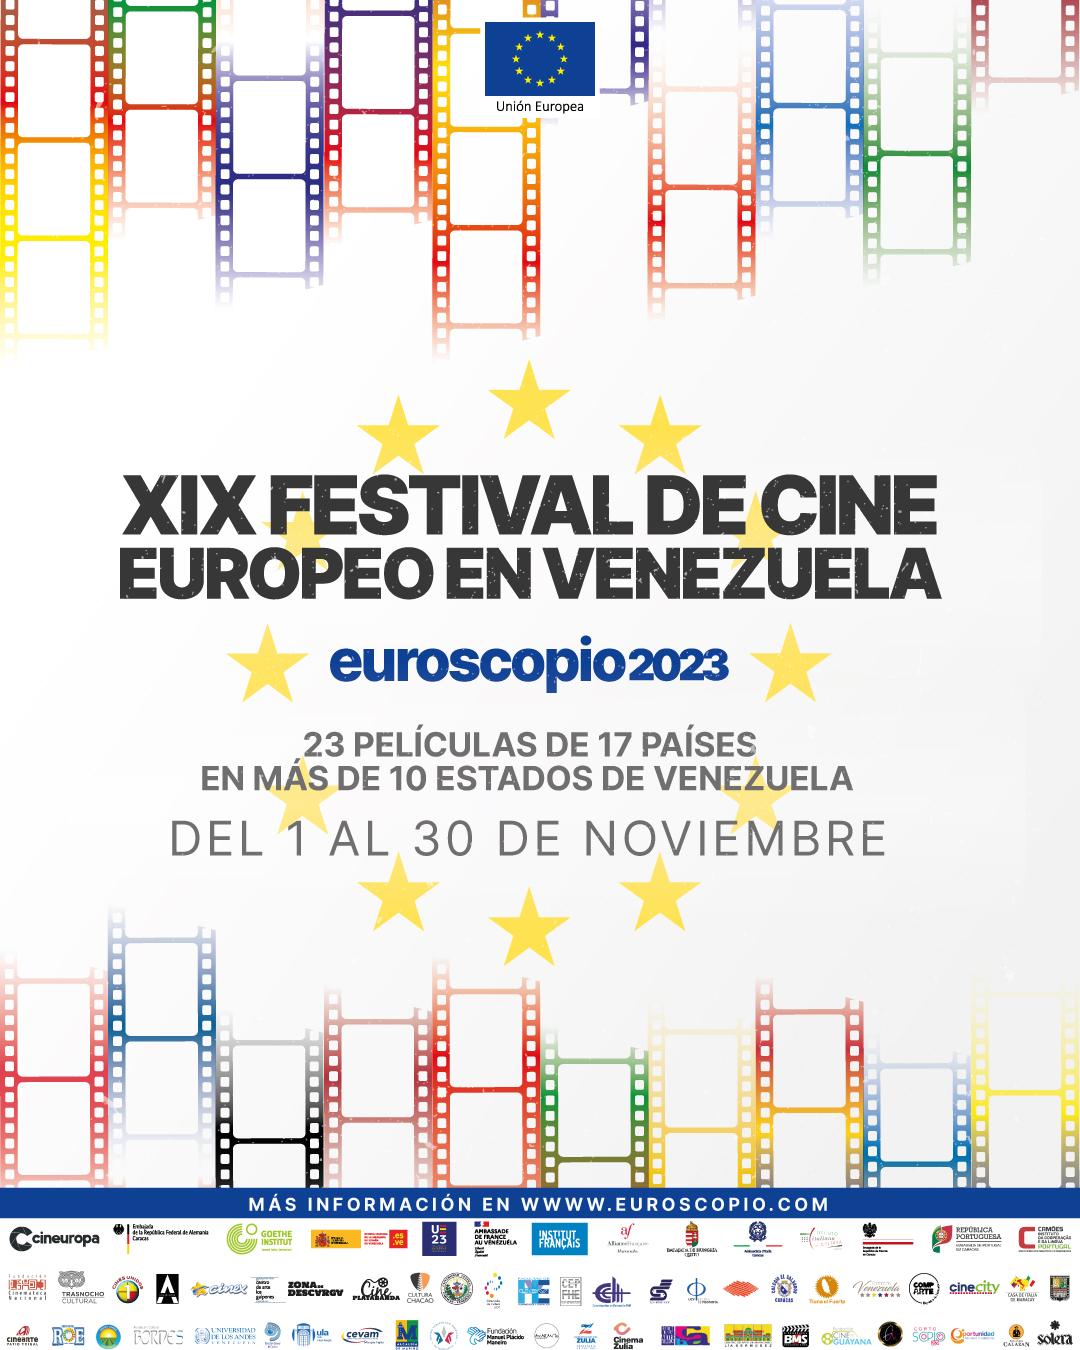 Festival de Cine Europeo "Euroscopio" 2023